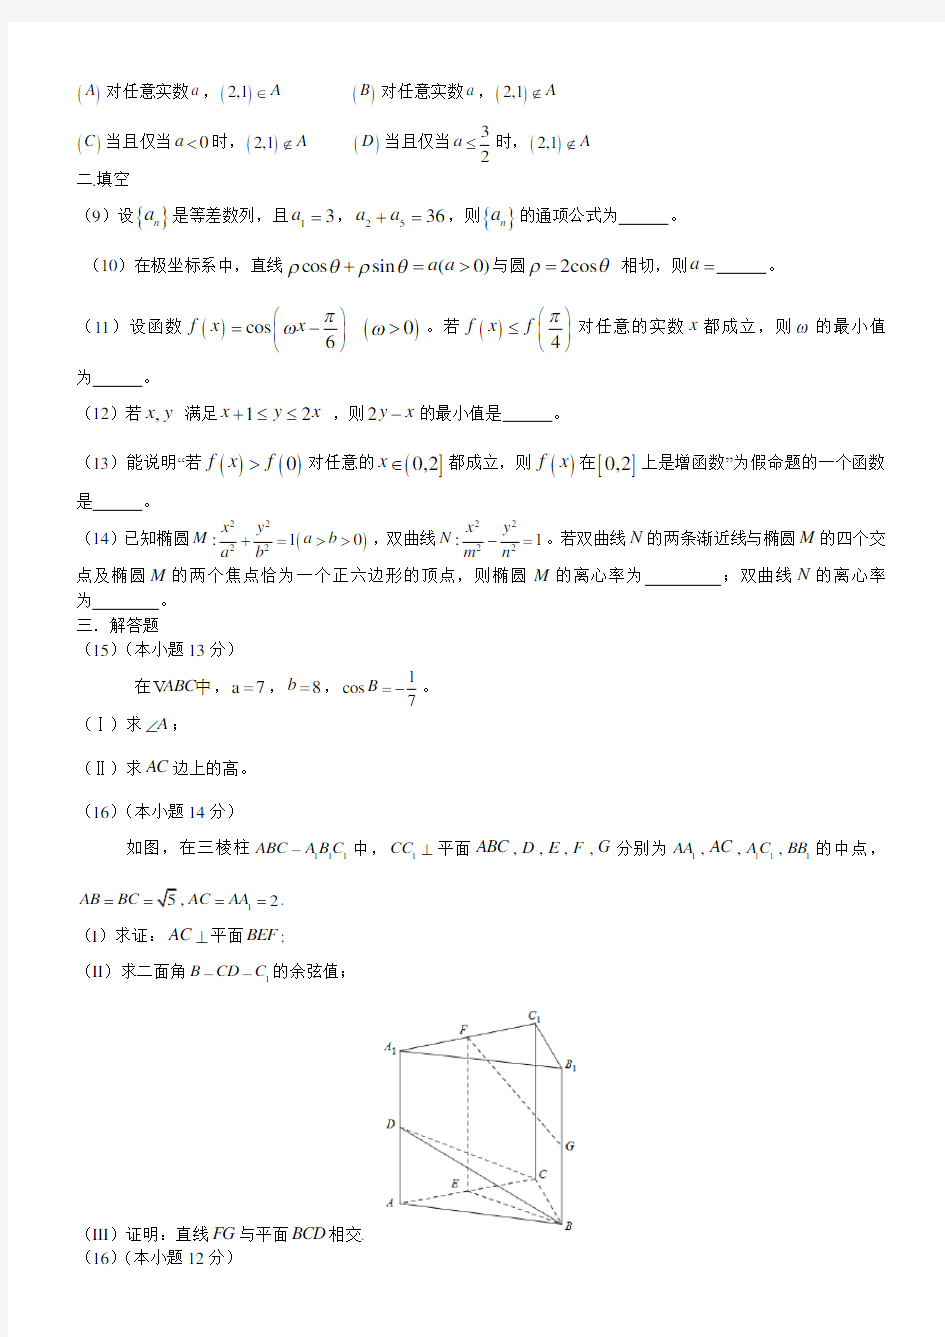 (完整版)2018年北京高考卷数学(理科)试题及答案